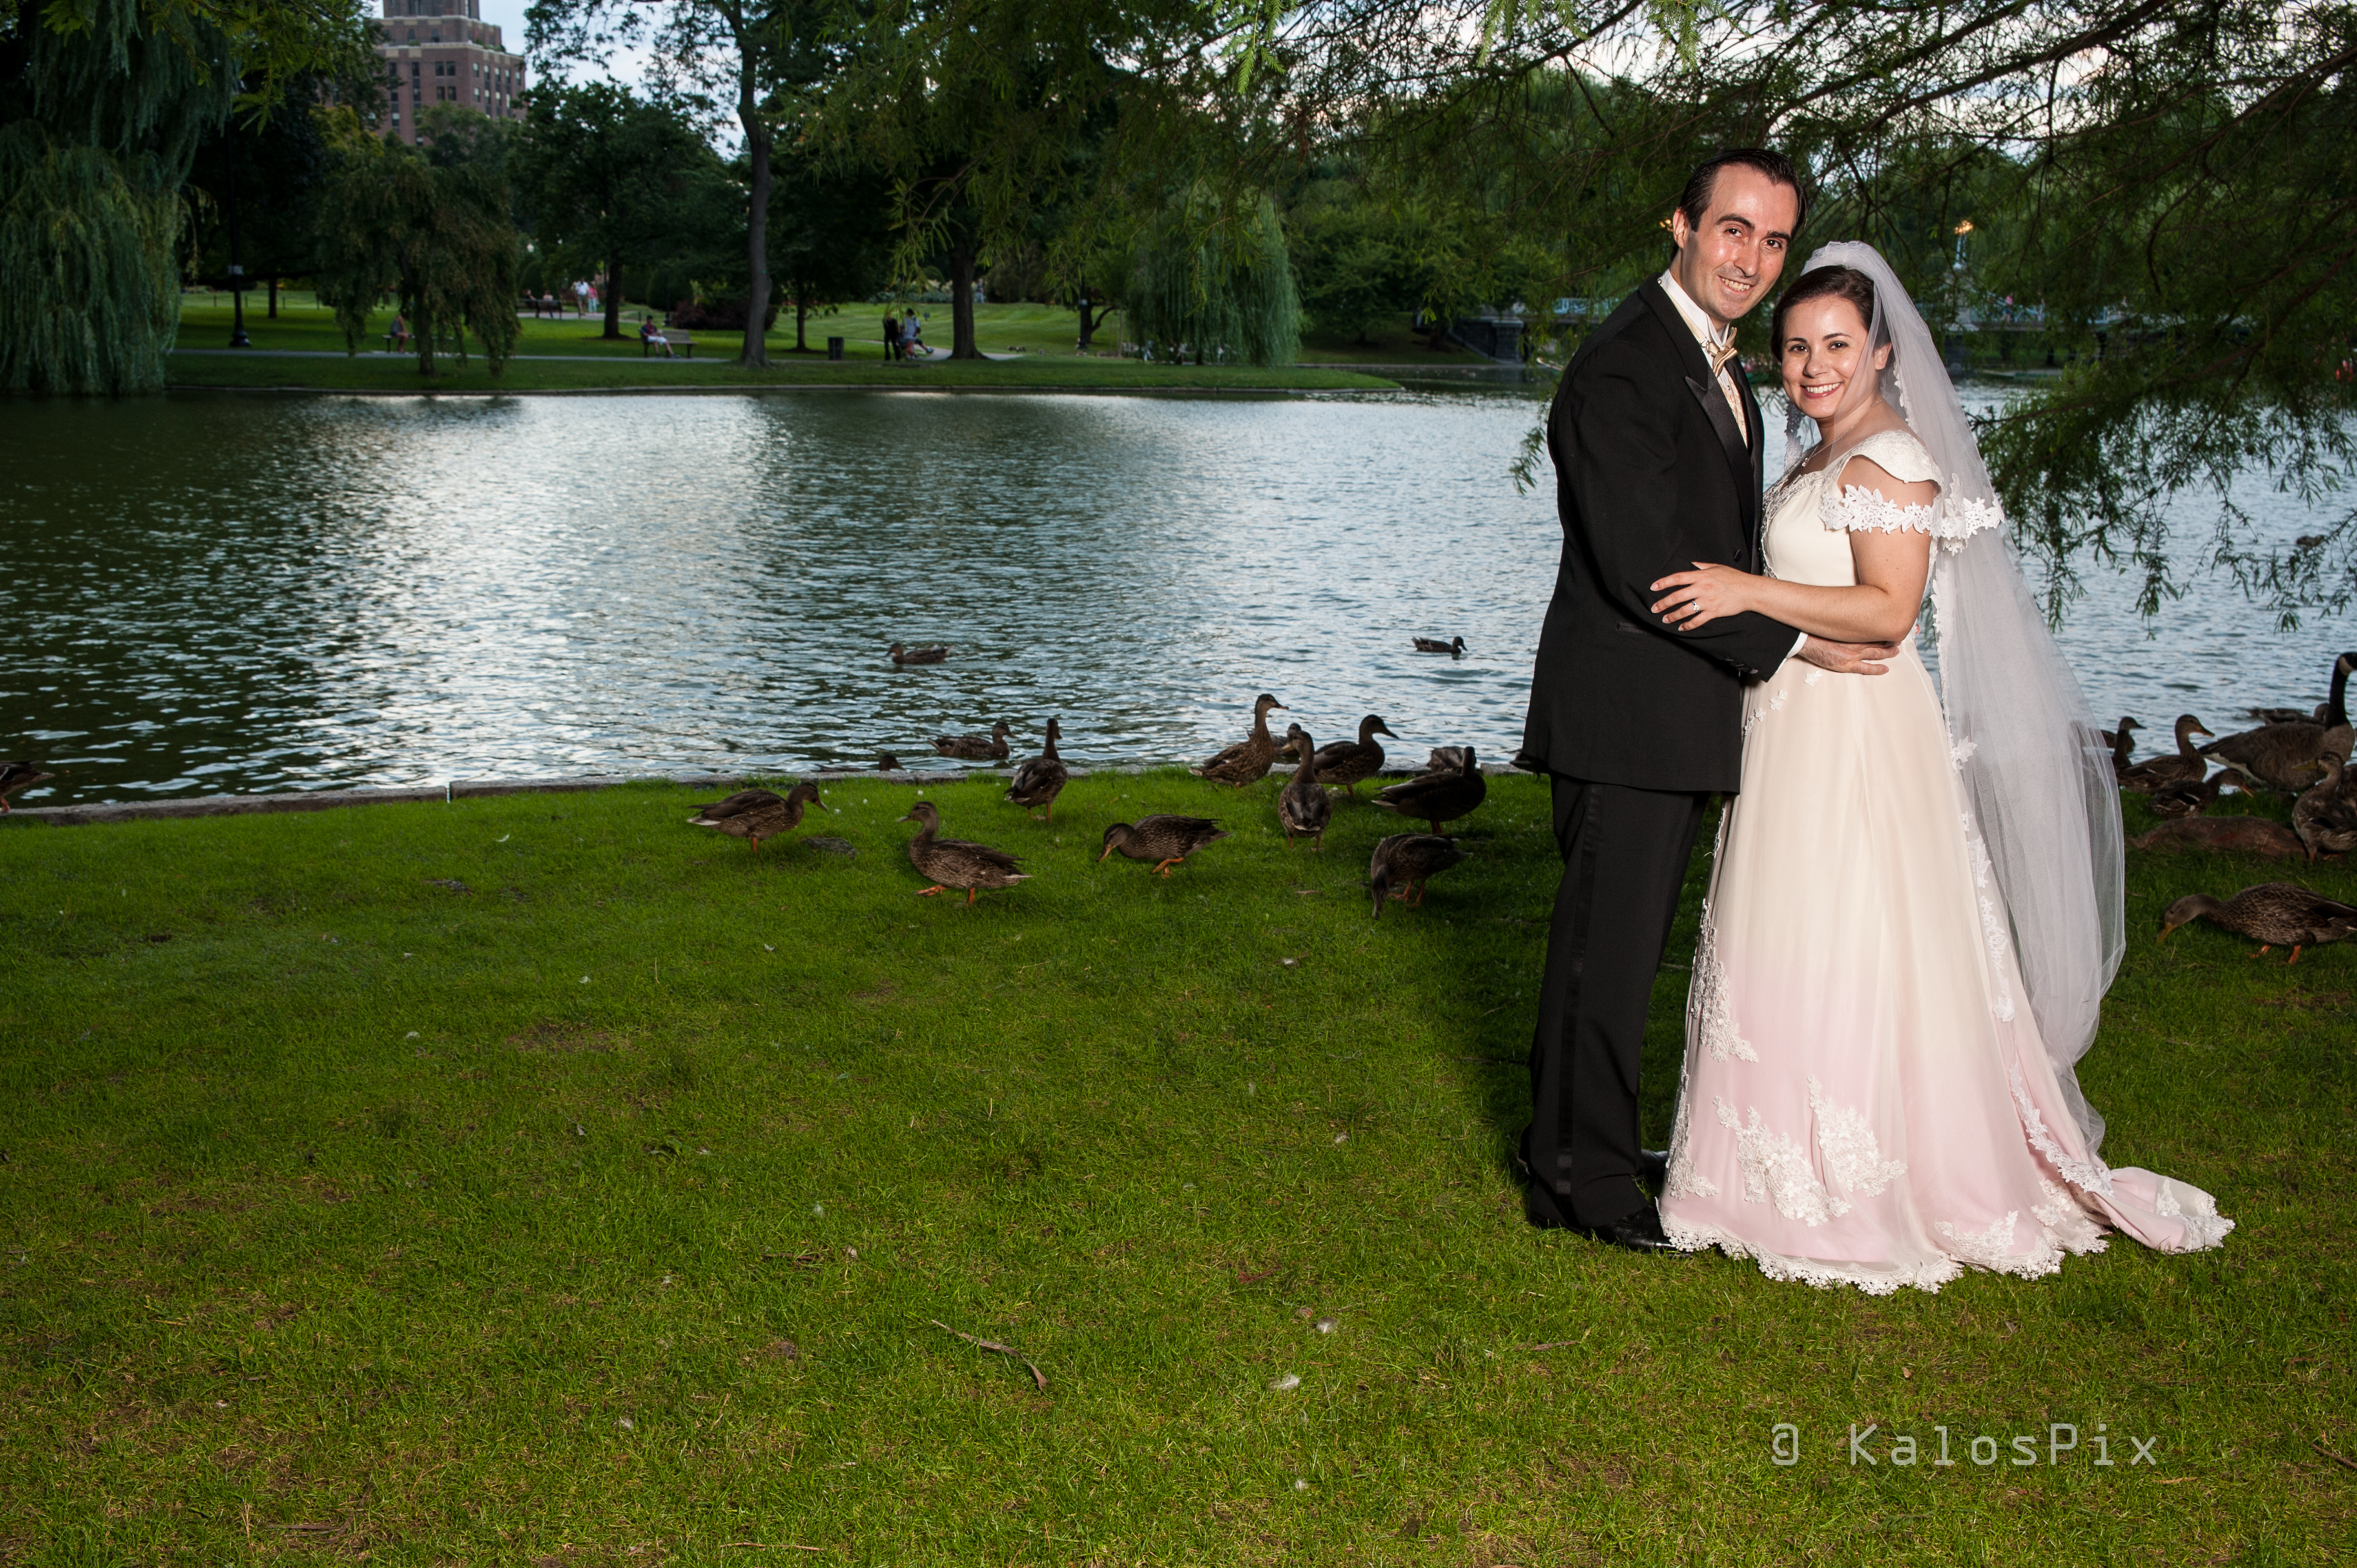 Dan Marshall & Shira Price Wedding Portrait at Boston Public Garden